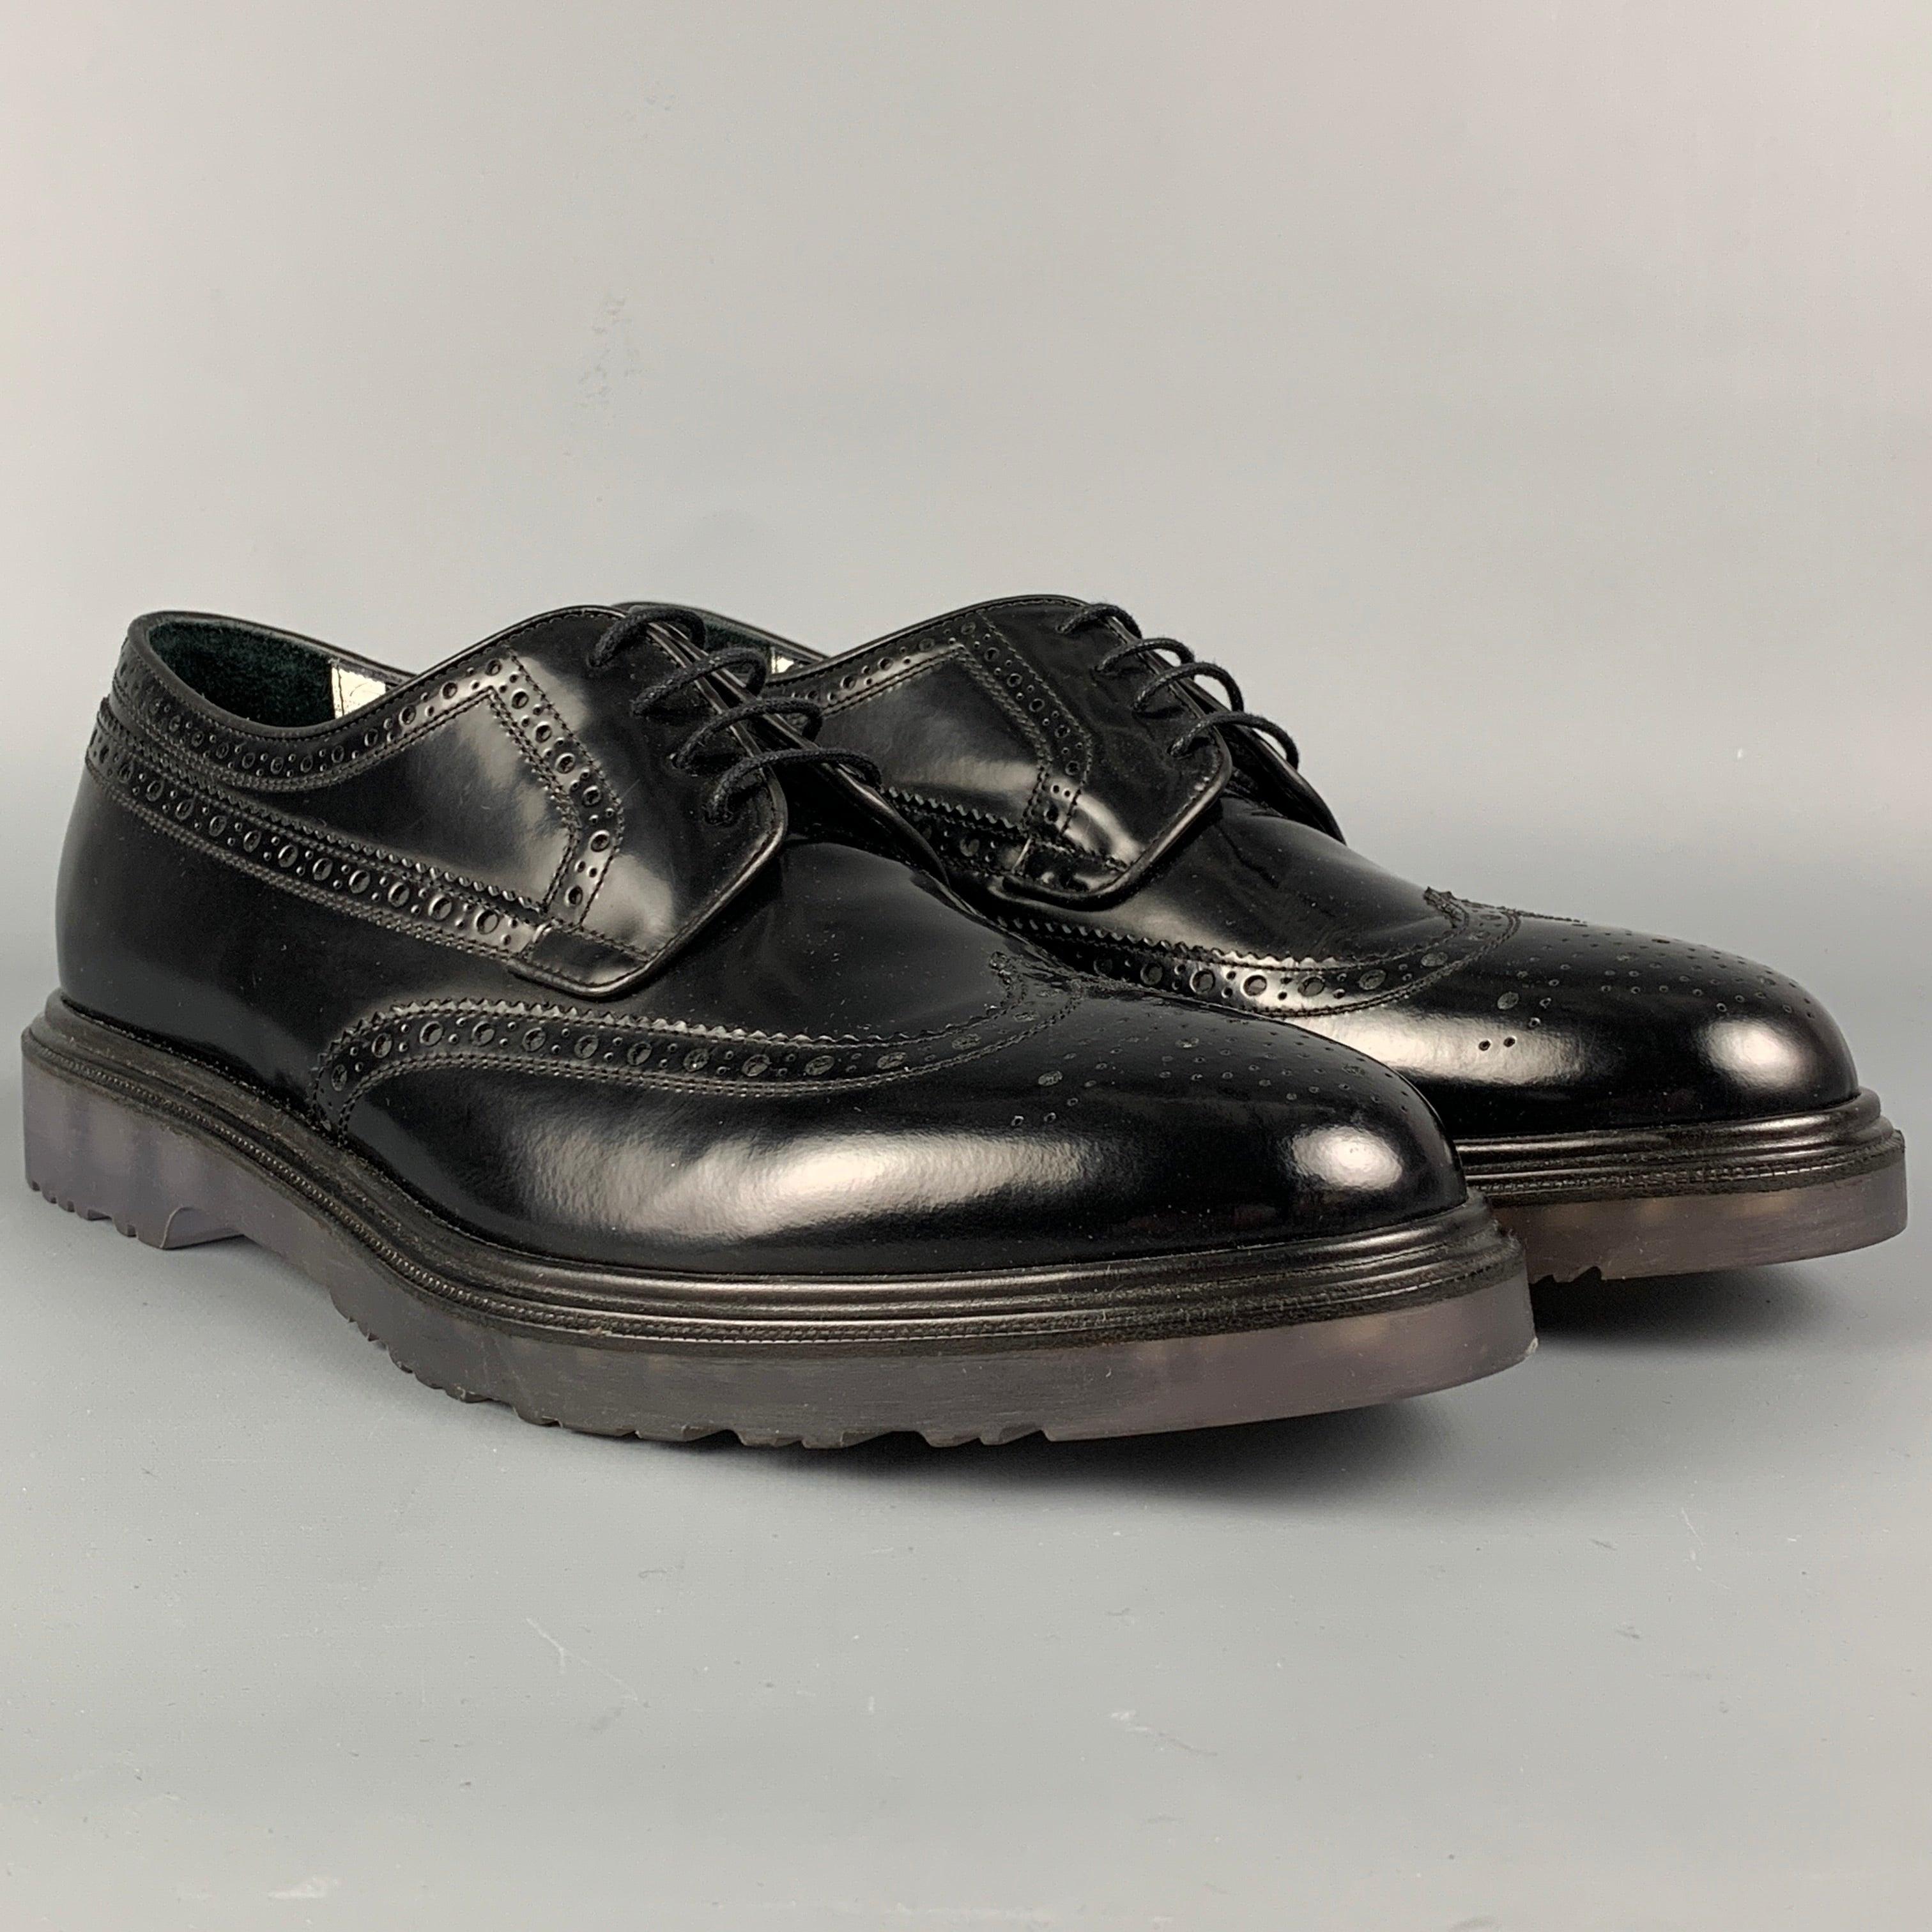 Les chaussures PAUL SMITH sont en cuir perforé noir et présentent un style à bouts pointus, des lacets et une semelle transparente. Fait en Italie.
Très bien
Etat d'occasion. 

Marqué :   8Semelle d'usure : 12 pouces  x 4,5 pouces 
  
  
 
Référence